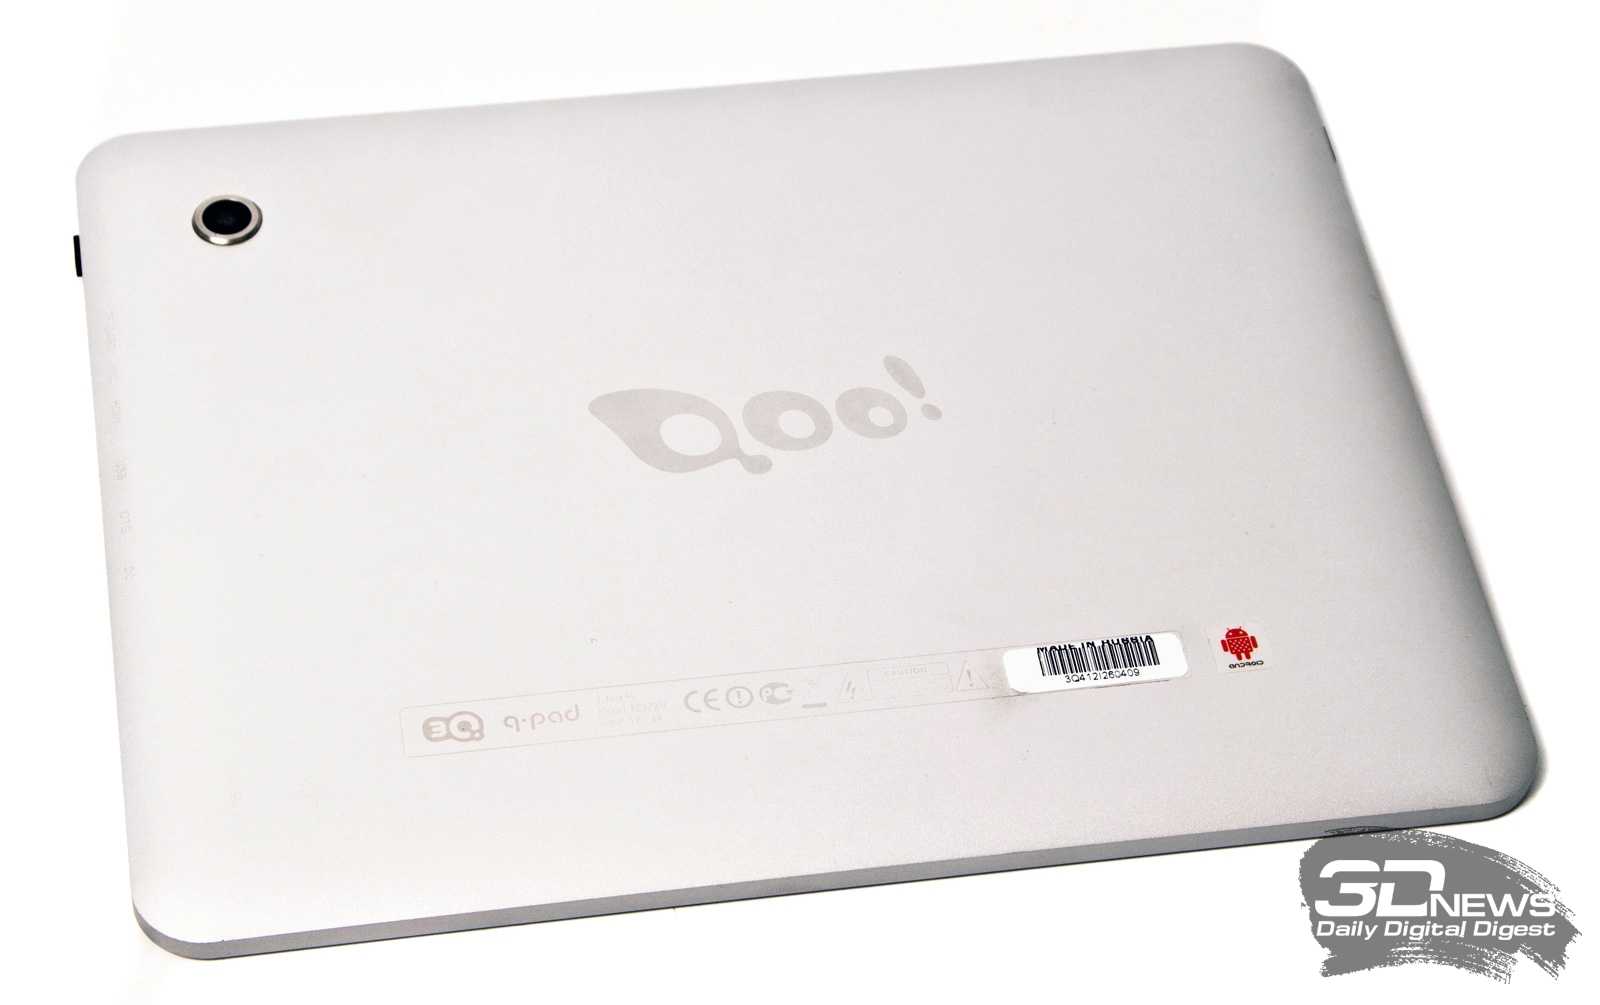 Планшет 3q qpad rc9724c 8 гб wifi серебристый — купить, цена и характеристики, отзывы